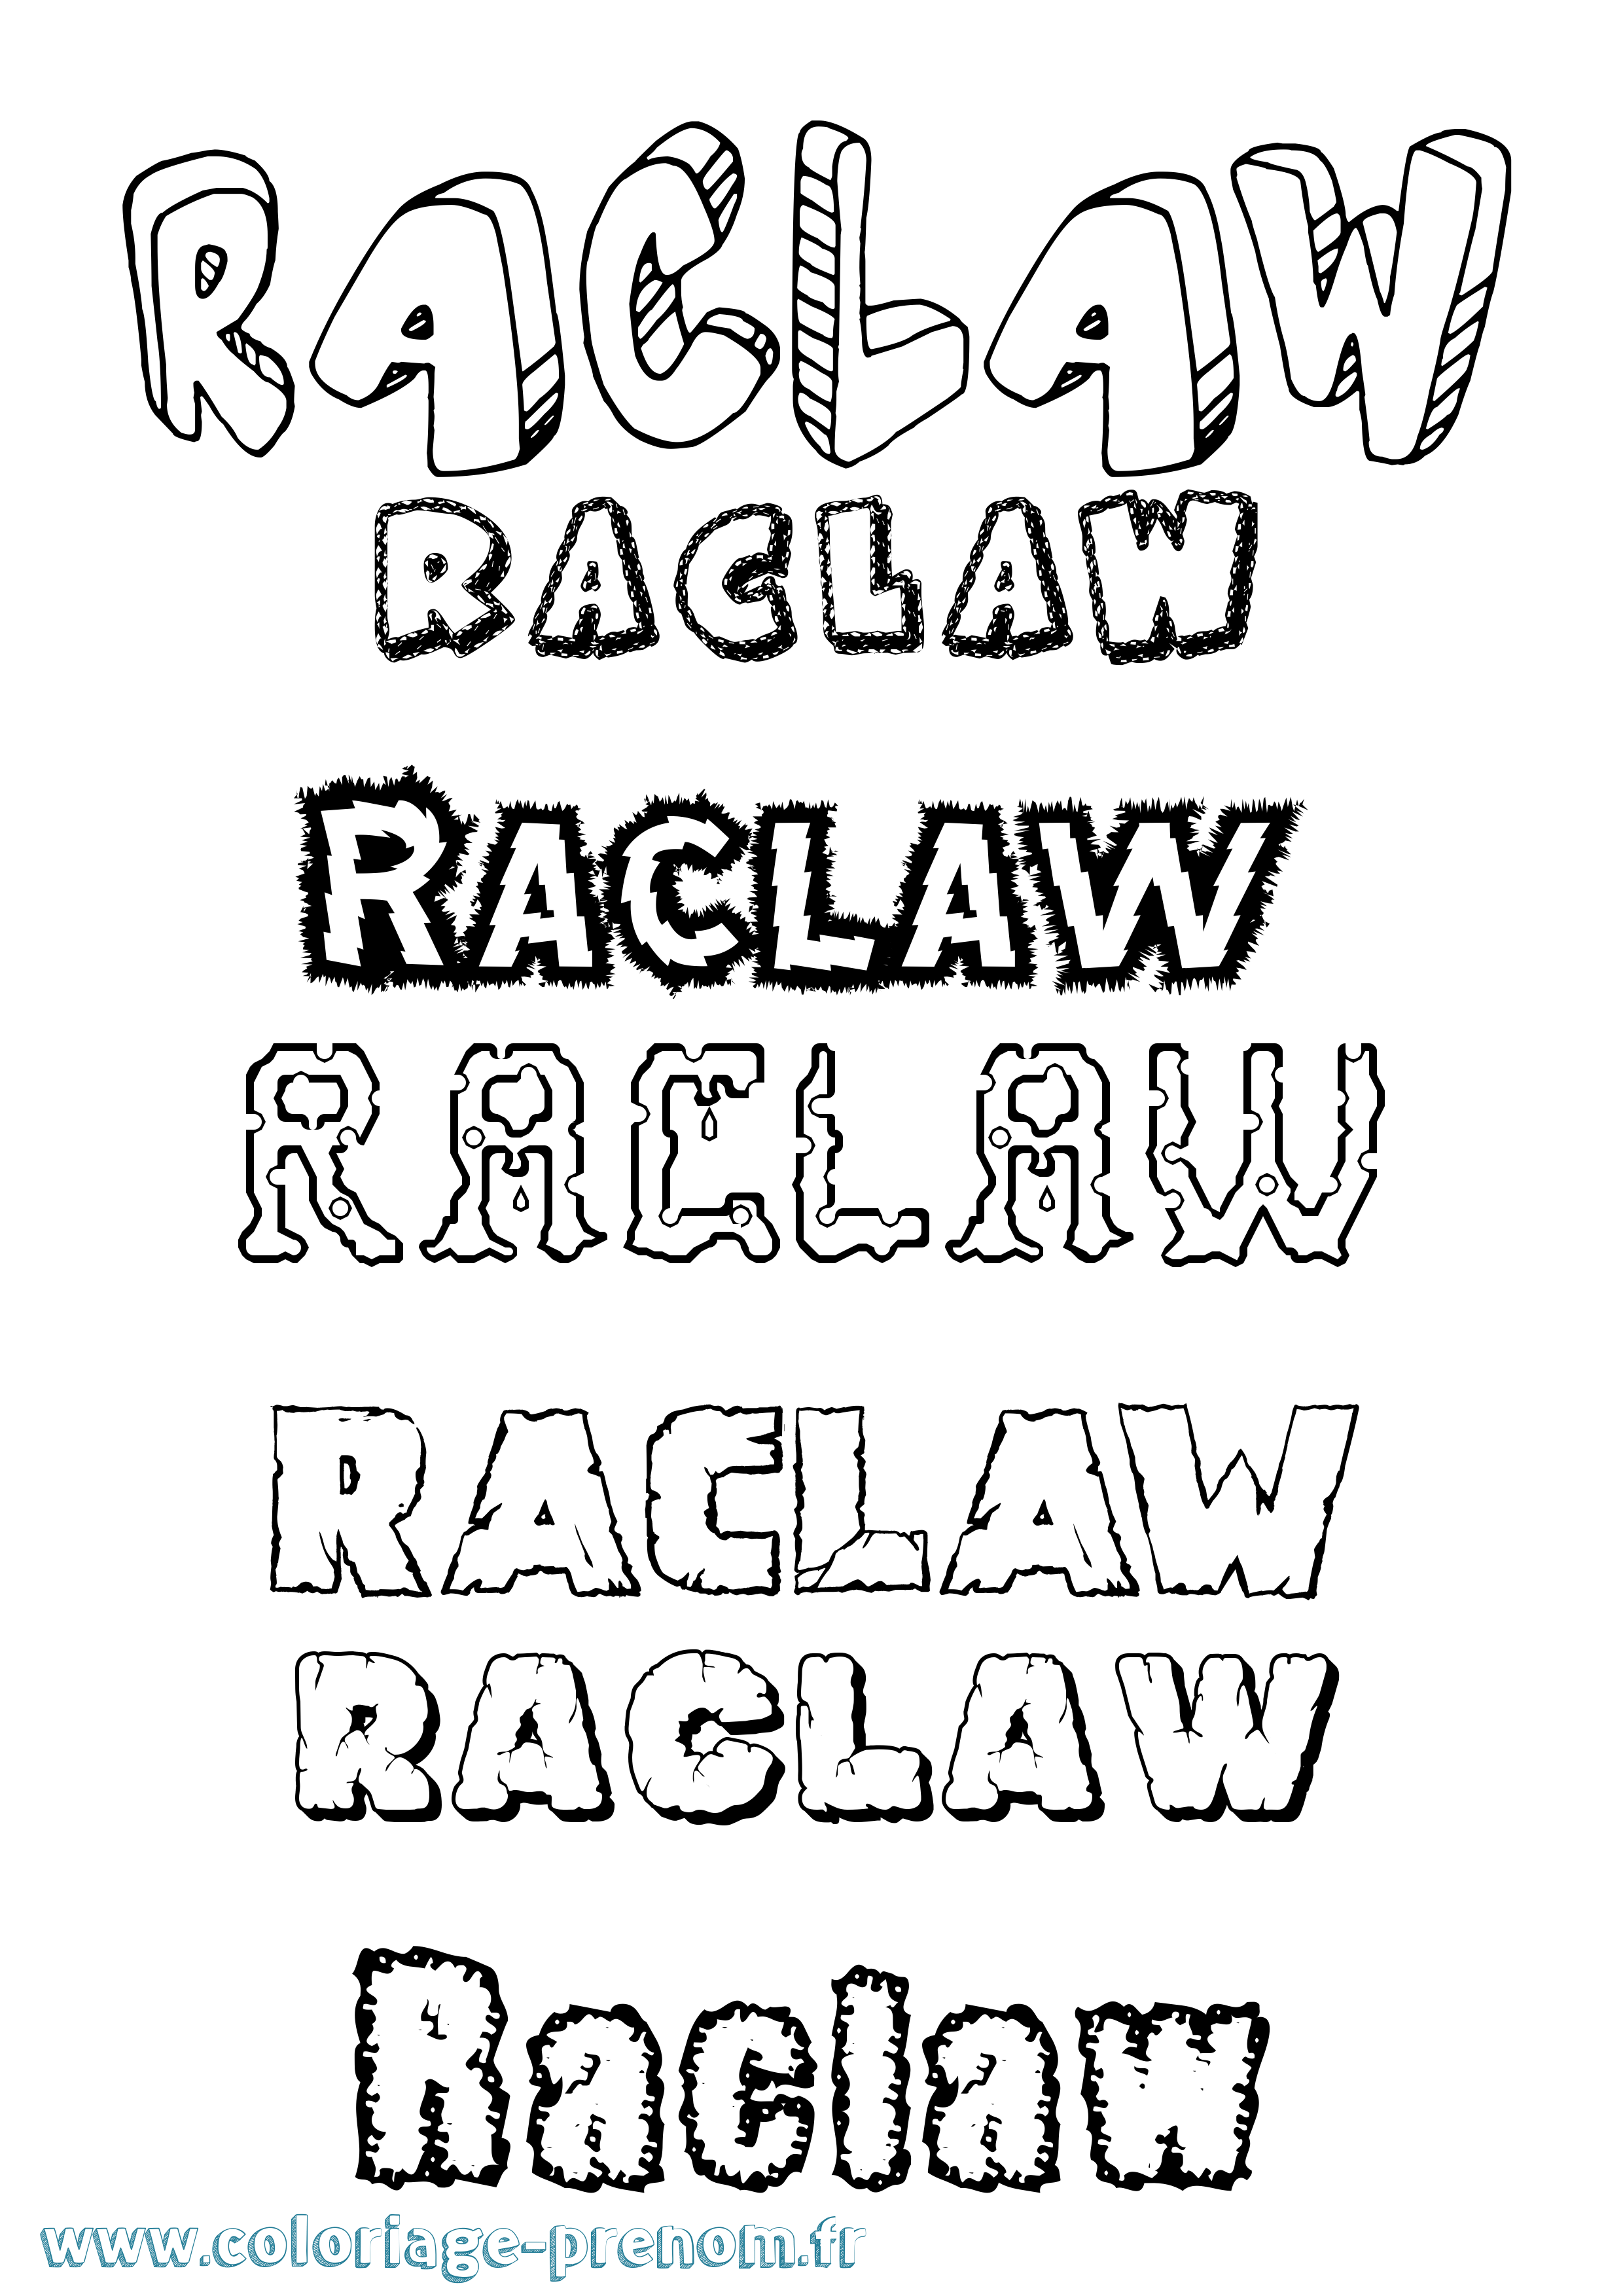 Coloriage prénom Raclaw Destructuré